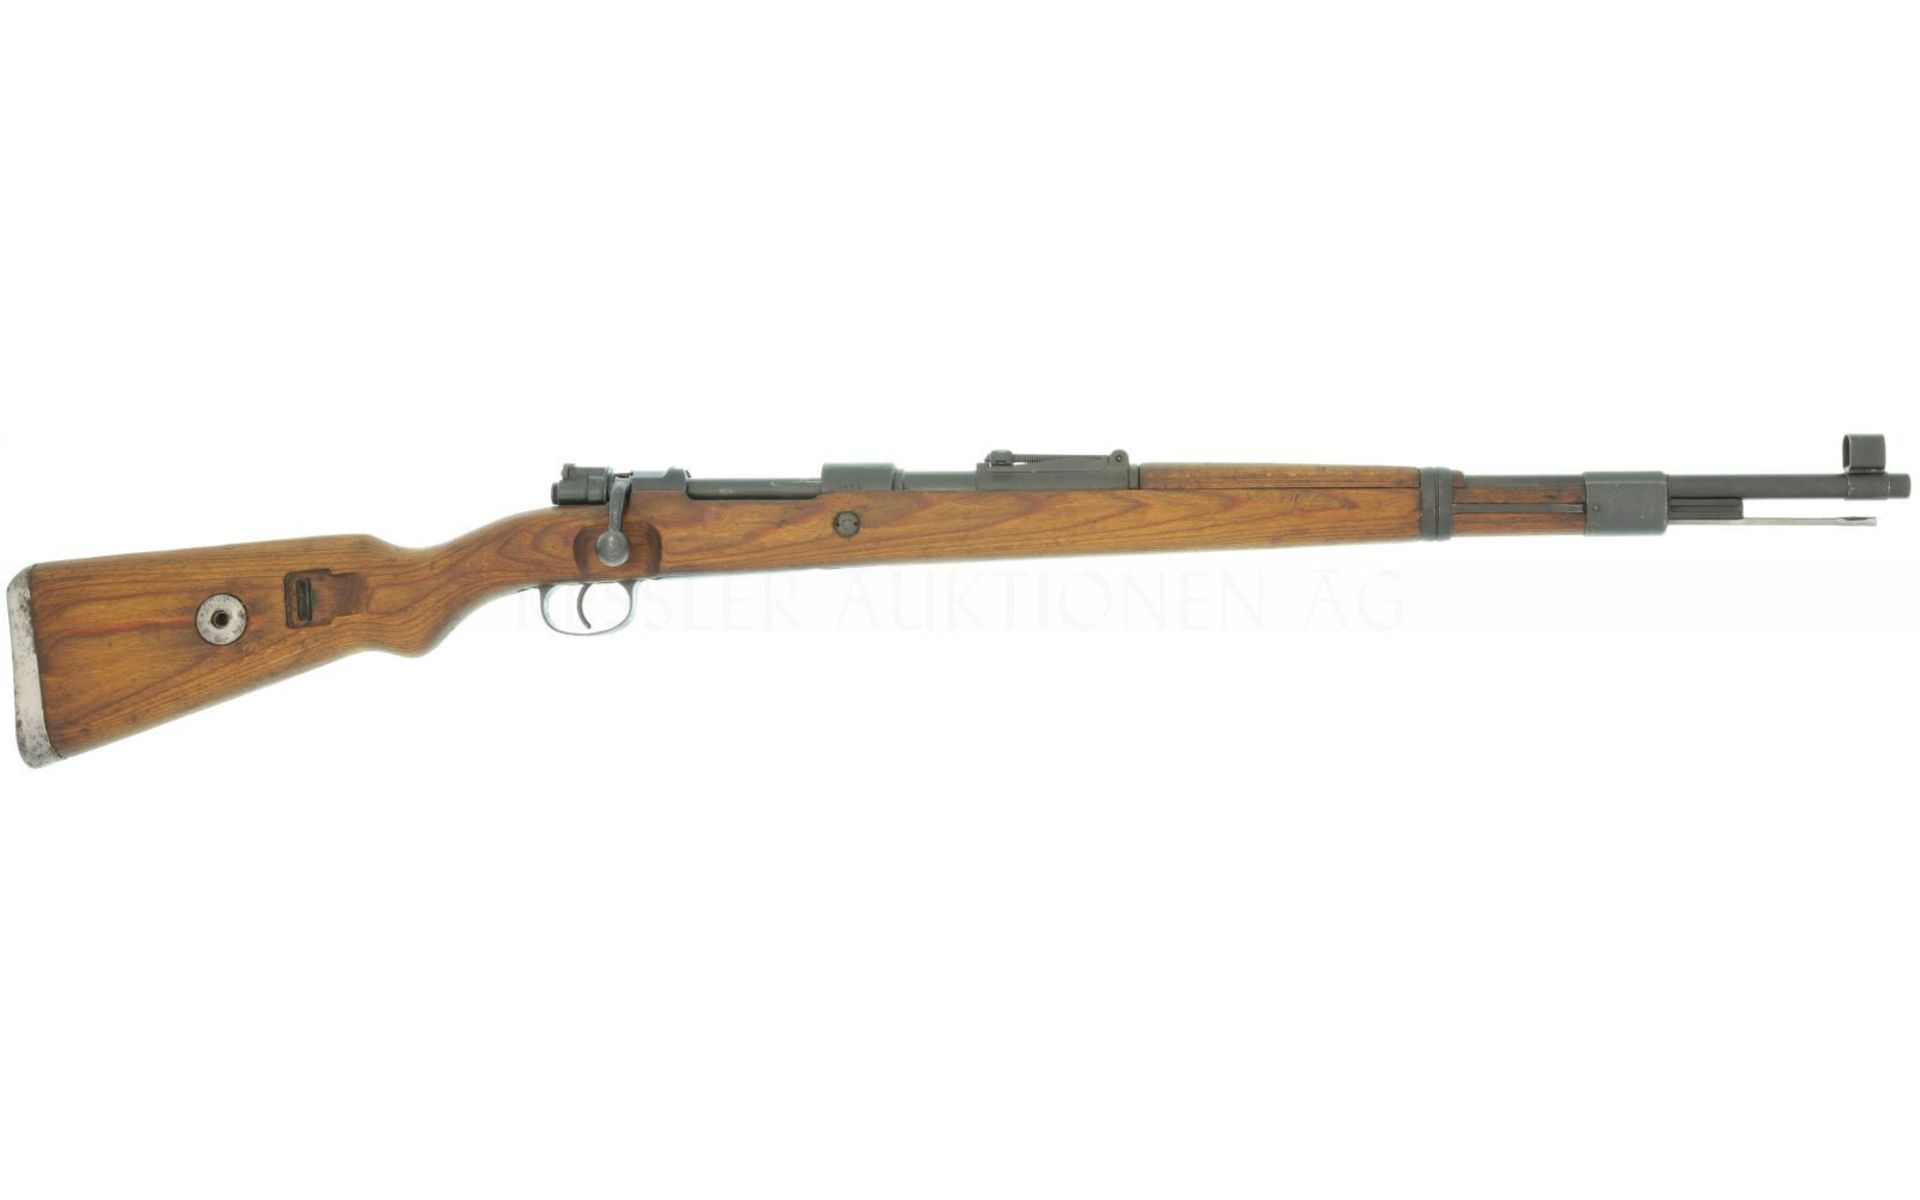 Repetierbüchse, Mauser Mod. K98, byf (Waffenfabrik Mauser), hergestellt 44, Kal. 8x57IS